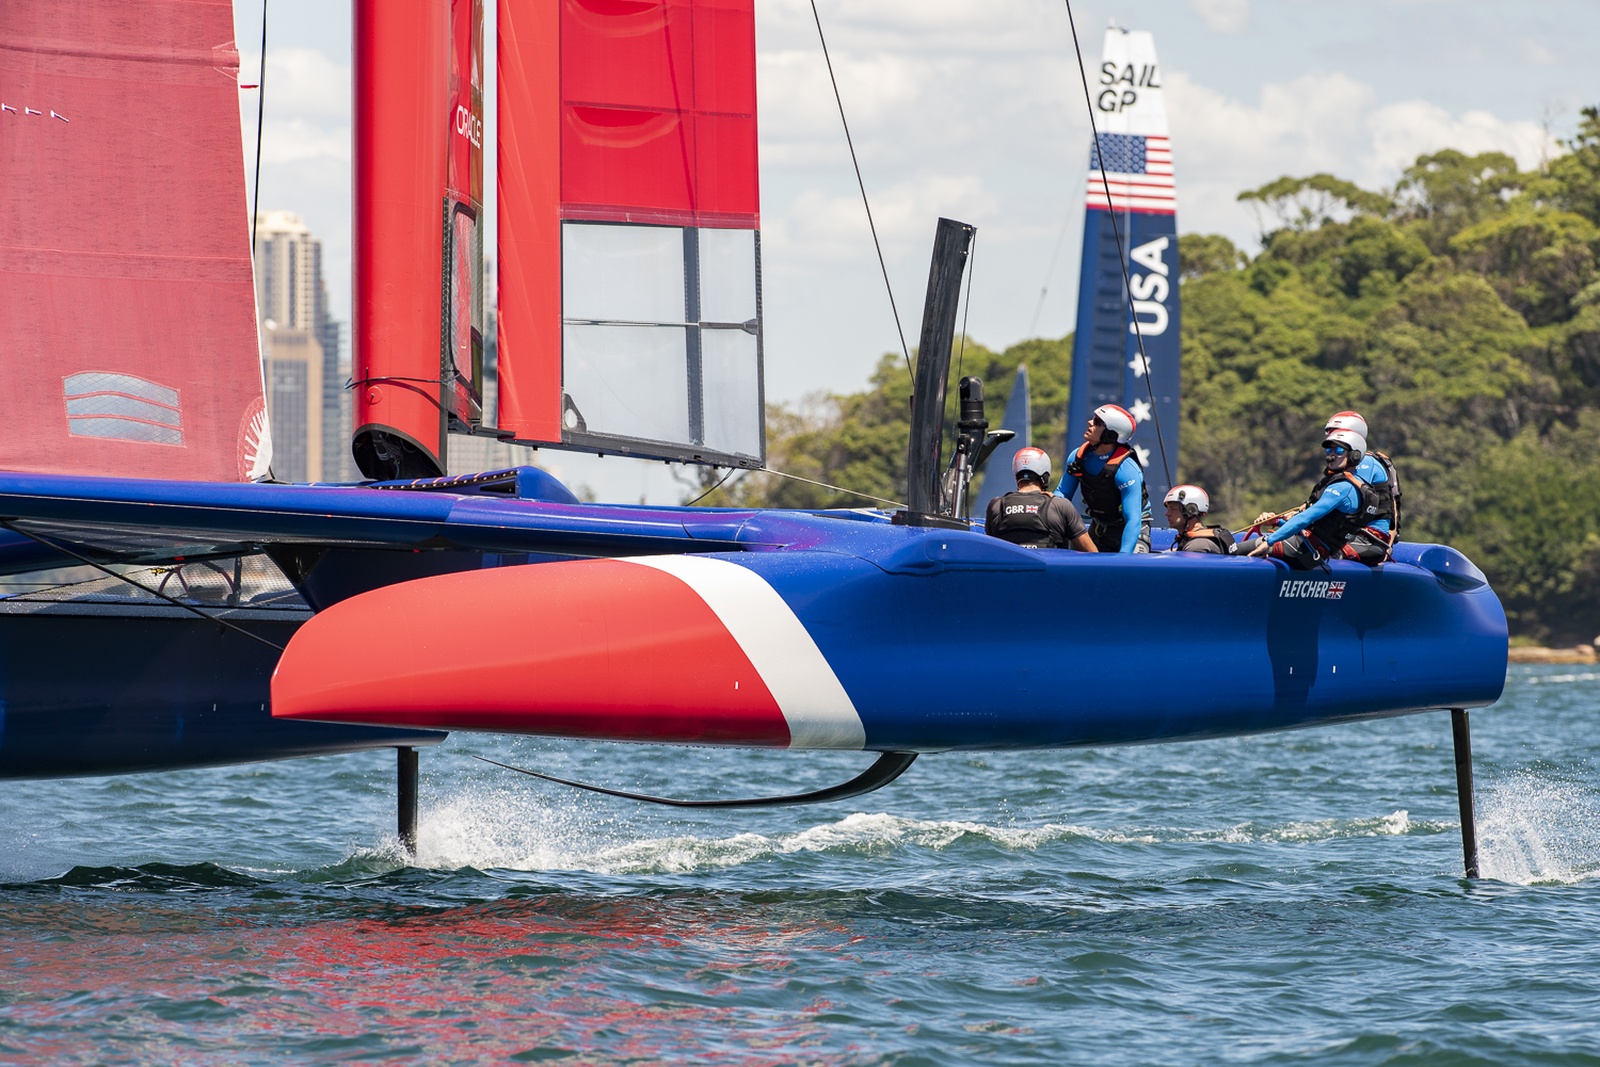 Sail GP: Sydney 2019 preview | Catamaran Racing, News & Design